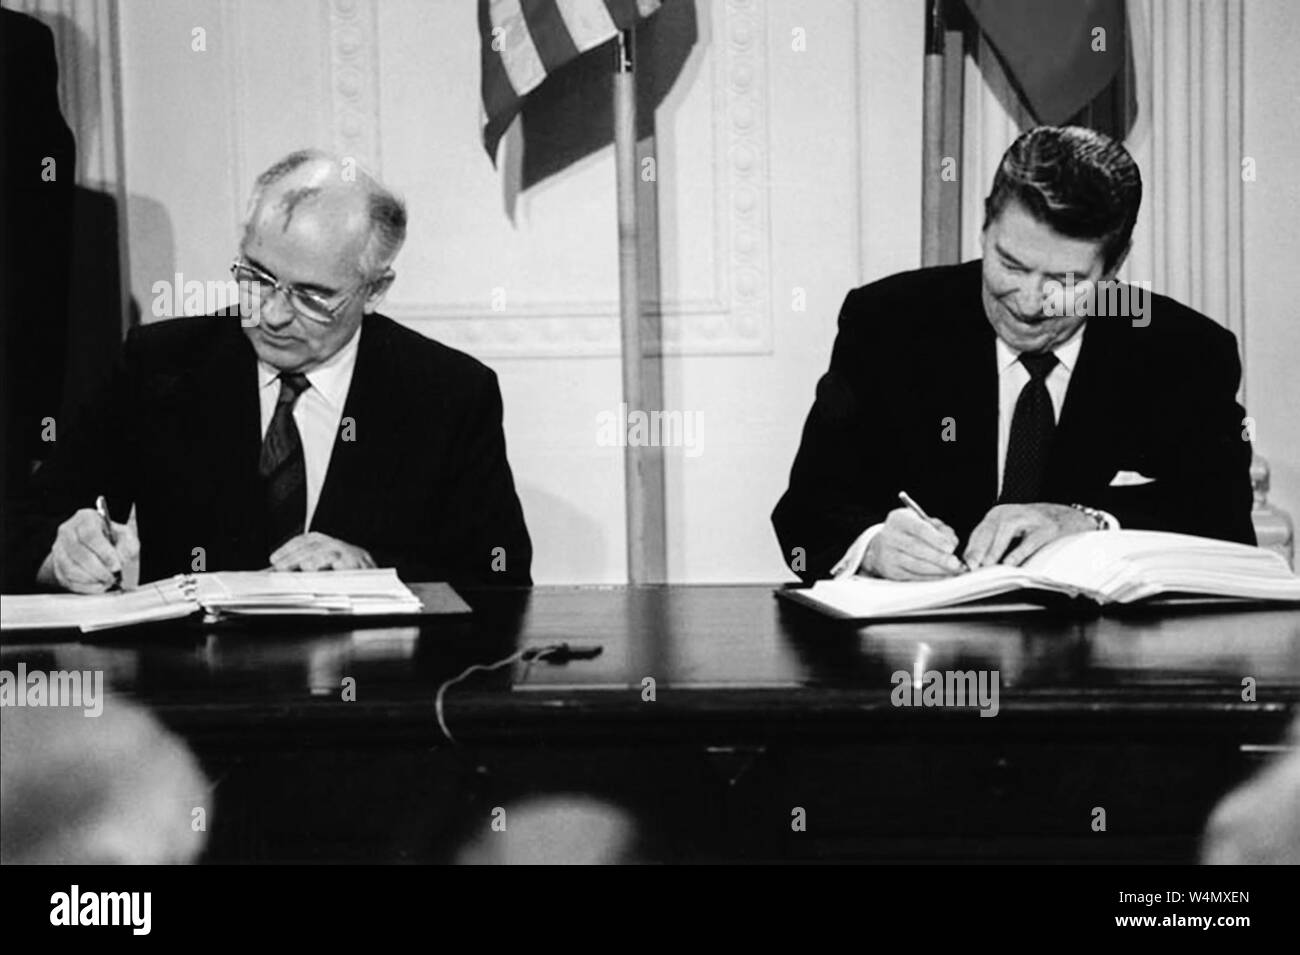 United States US-Präsident Ronald Reagan und der sowjetische Generalsekretär Michail Gorbatschow bei der Unterzeichnung des Intermediate-Range Nuclear forces (INF) Vertrag am 8. Dezember 1987 im East Room des Weißen Hauses. Stockfoto